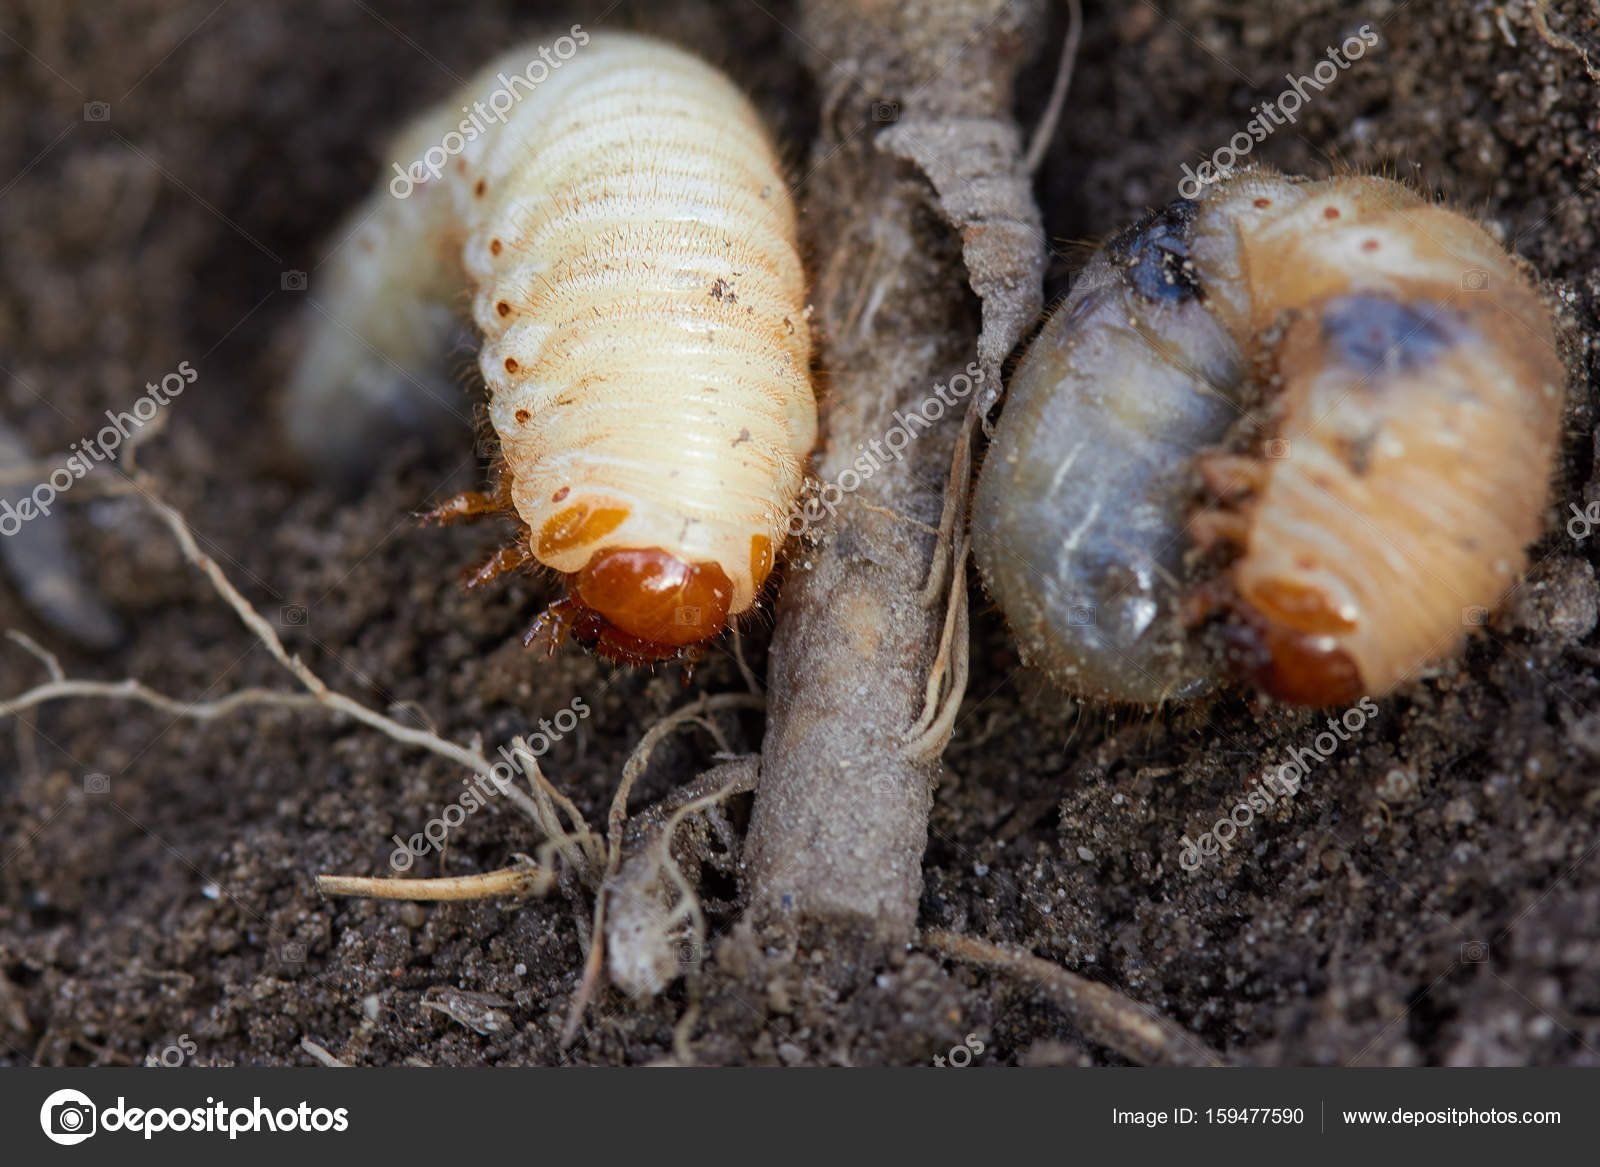 Личинки майского жука едят корни